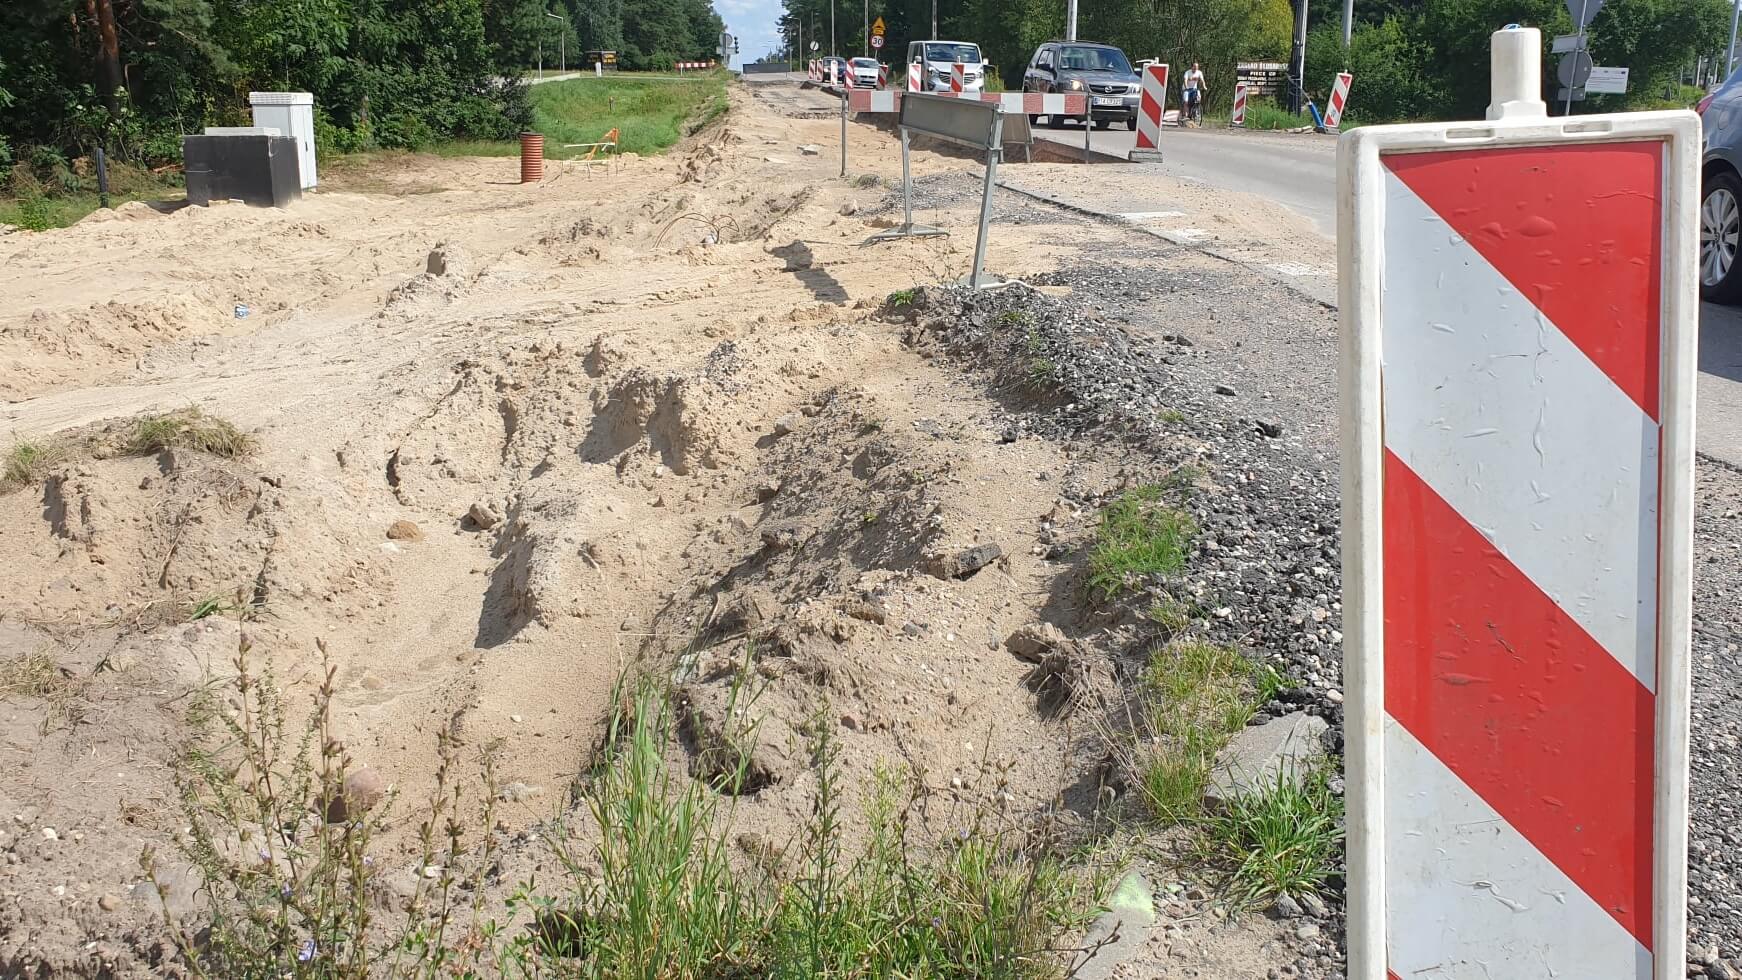 Miejsce, gdzie wstrzymano prace na budowanej drodze Porosły -Krupniki, widok od strony Szosy Kruszewskiej, źródło fot. https://www.facebook.com/powiatbialostocki